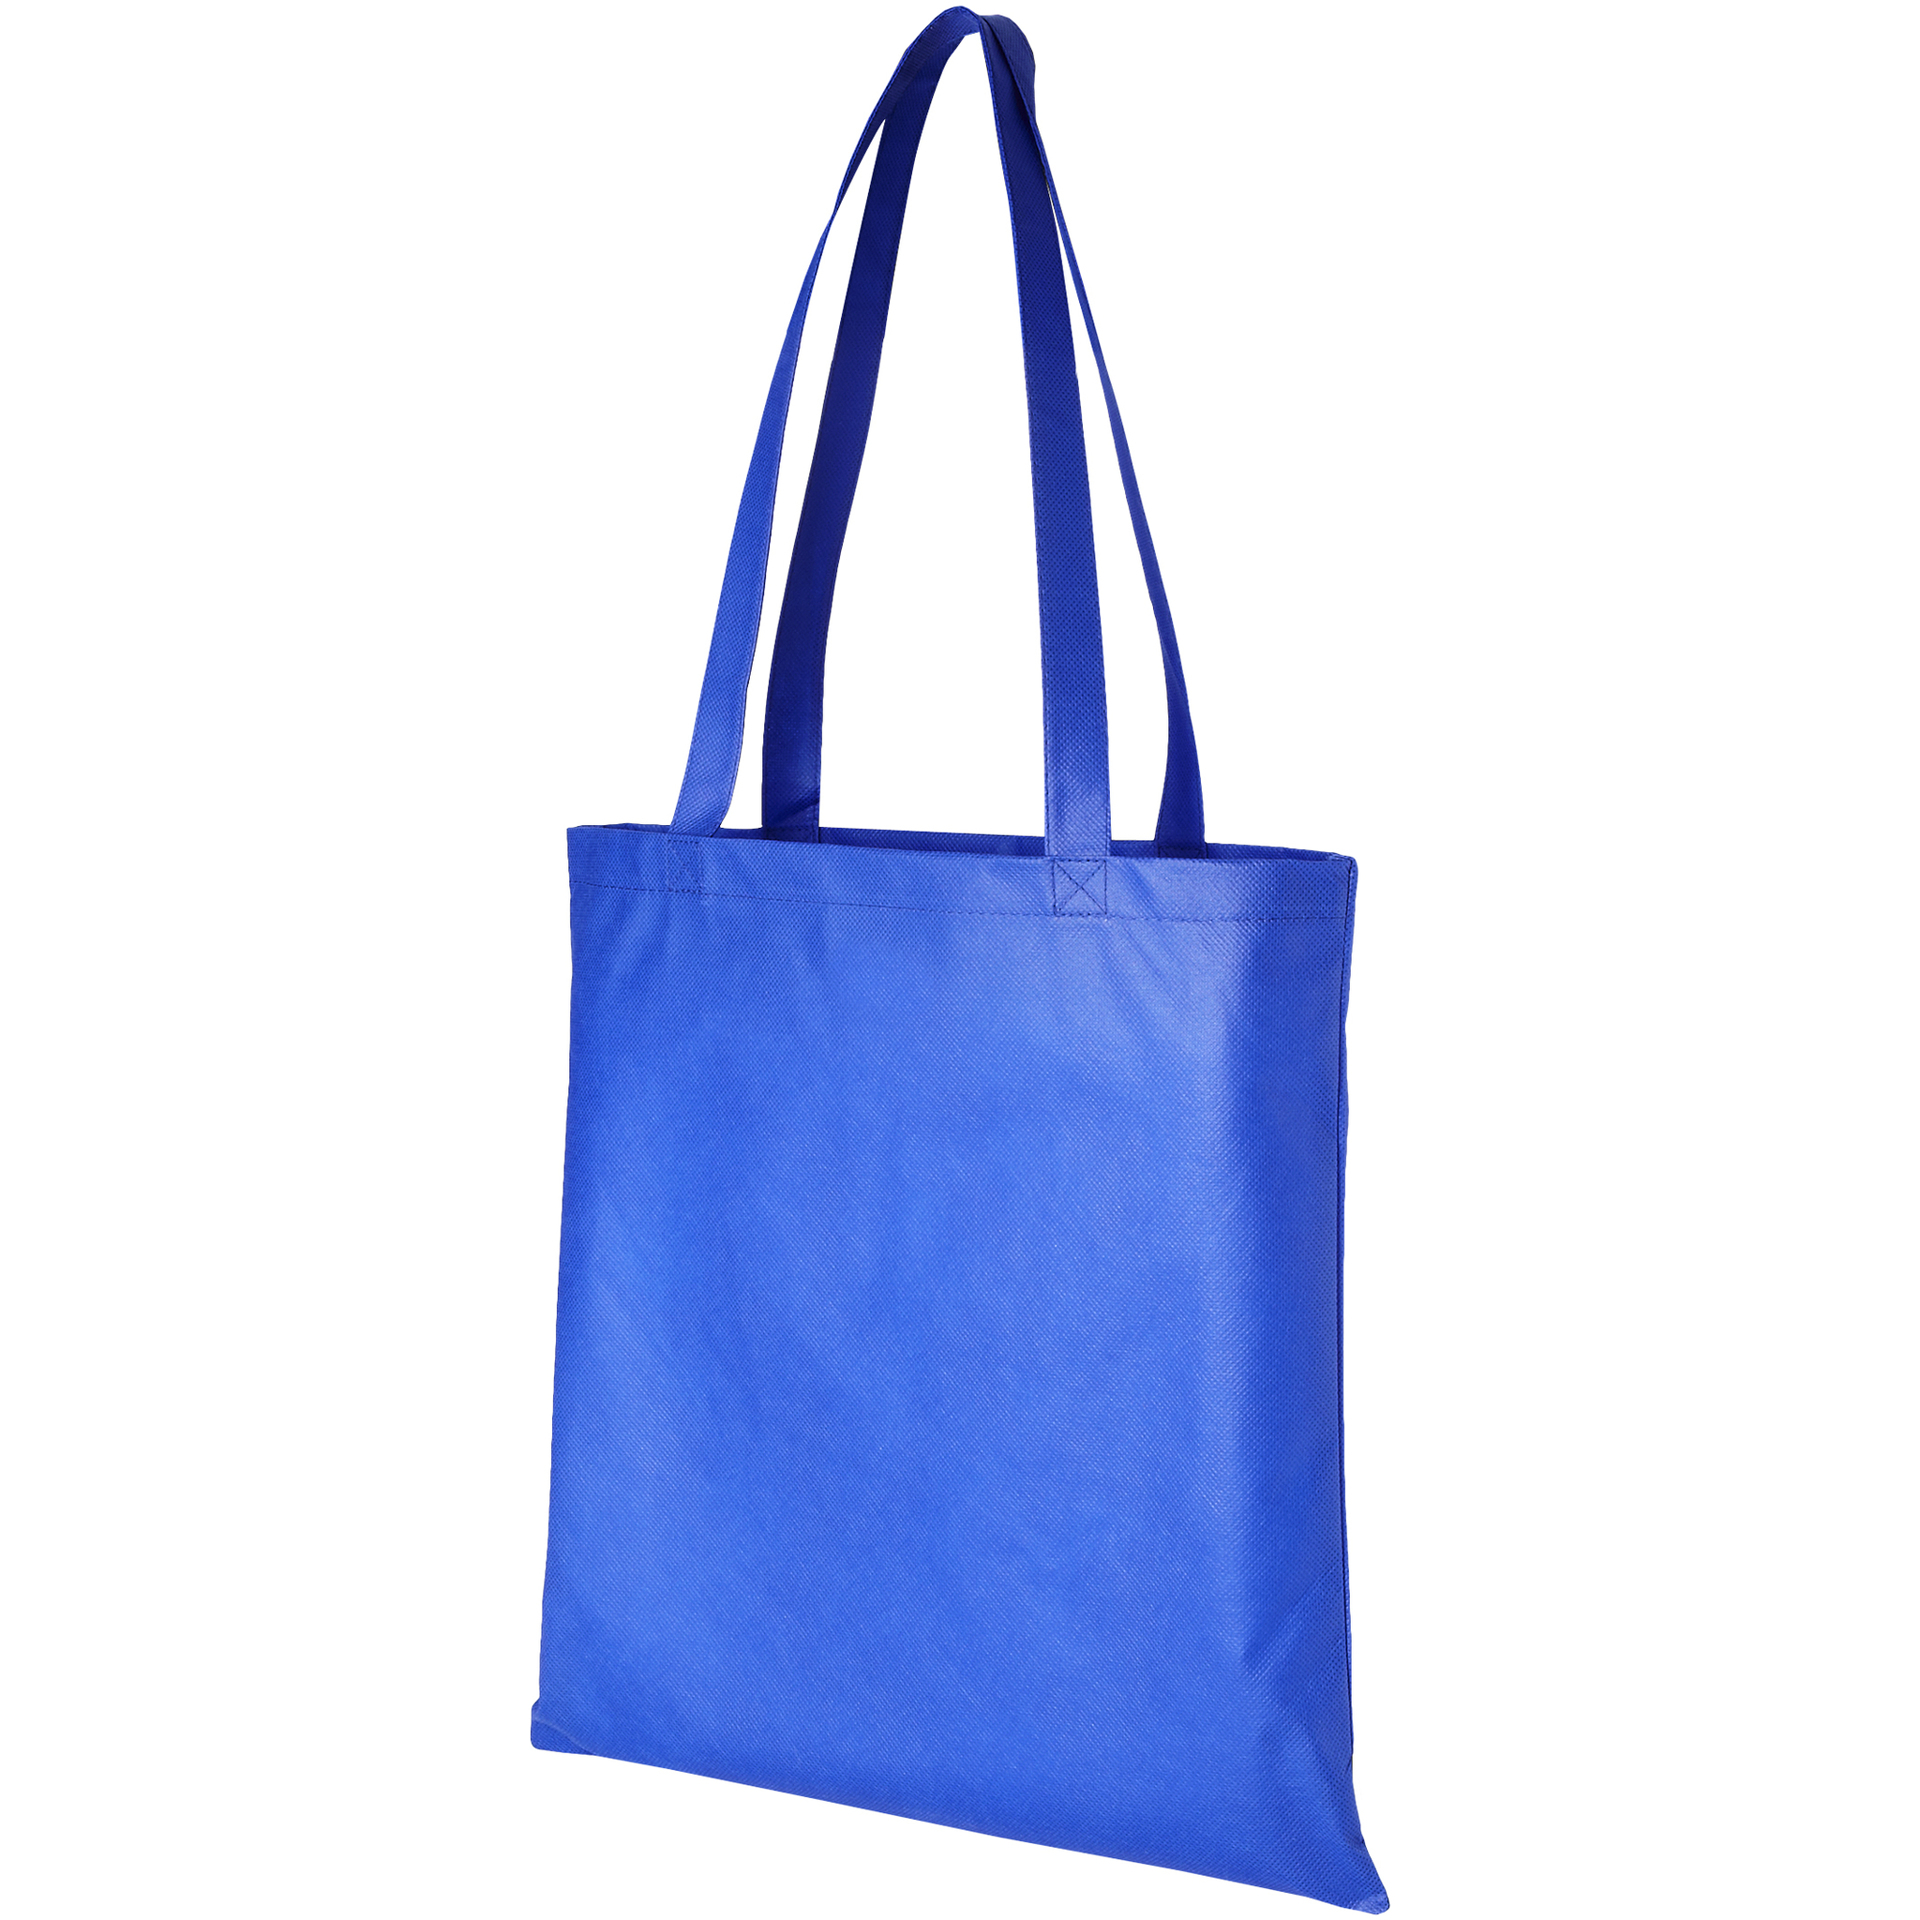 Blue long handled non-woven shopping bag